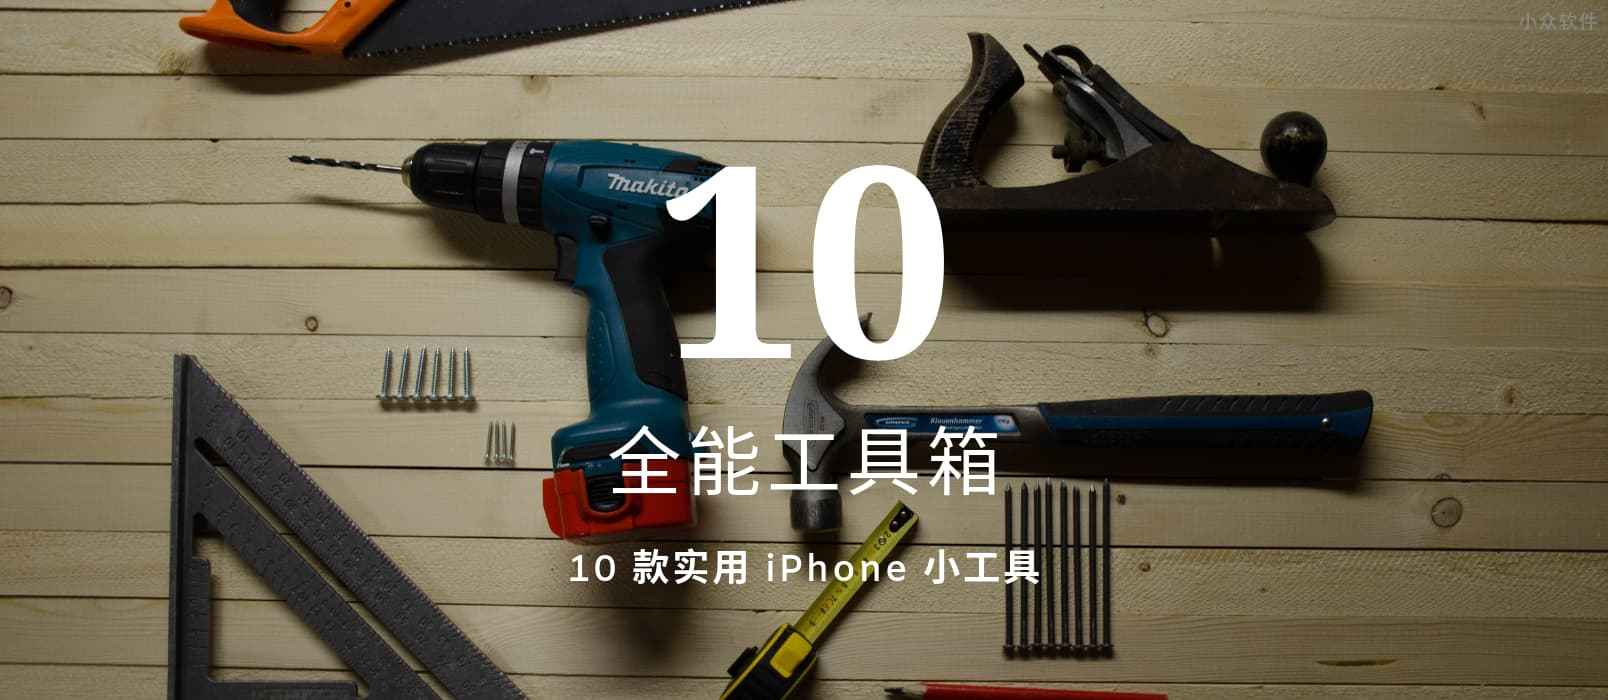 全能工具箱 – 拥有 10 款小工具的 iPhone 工具箱